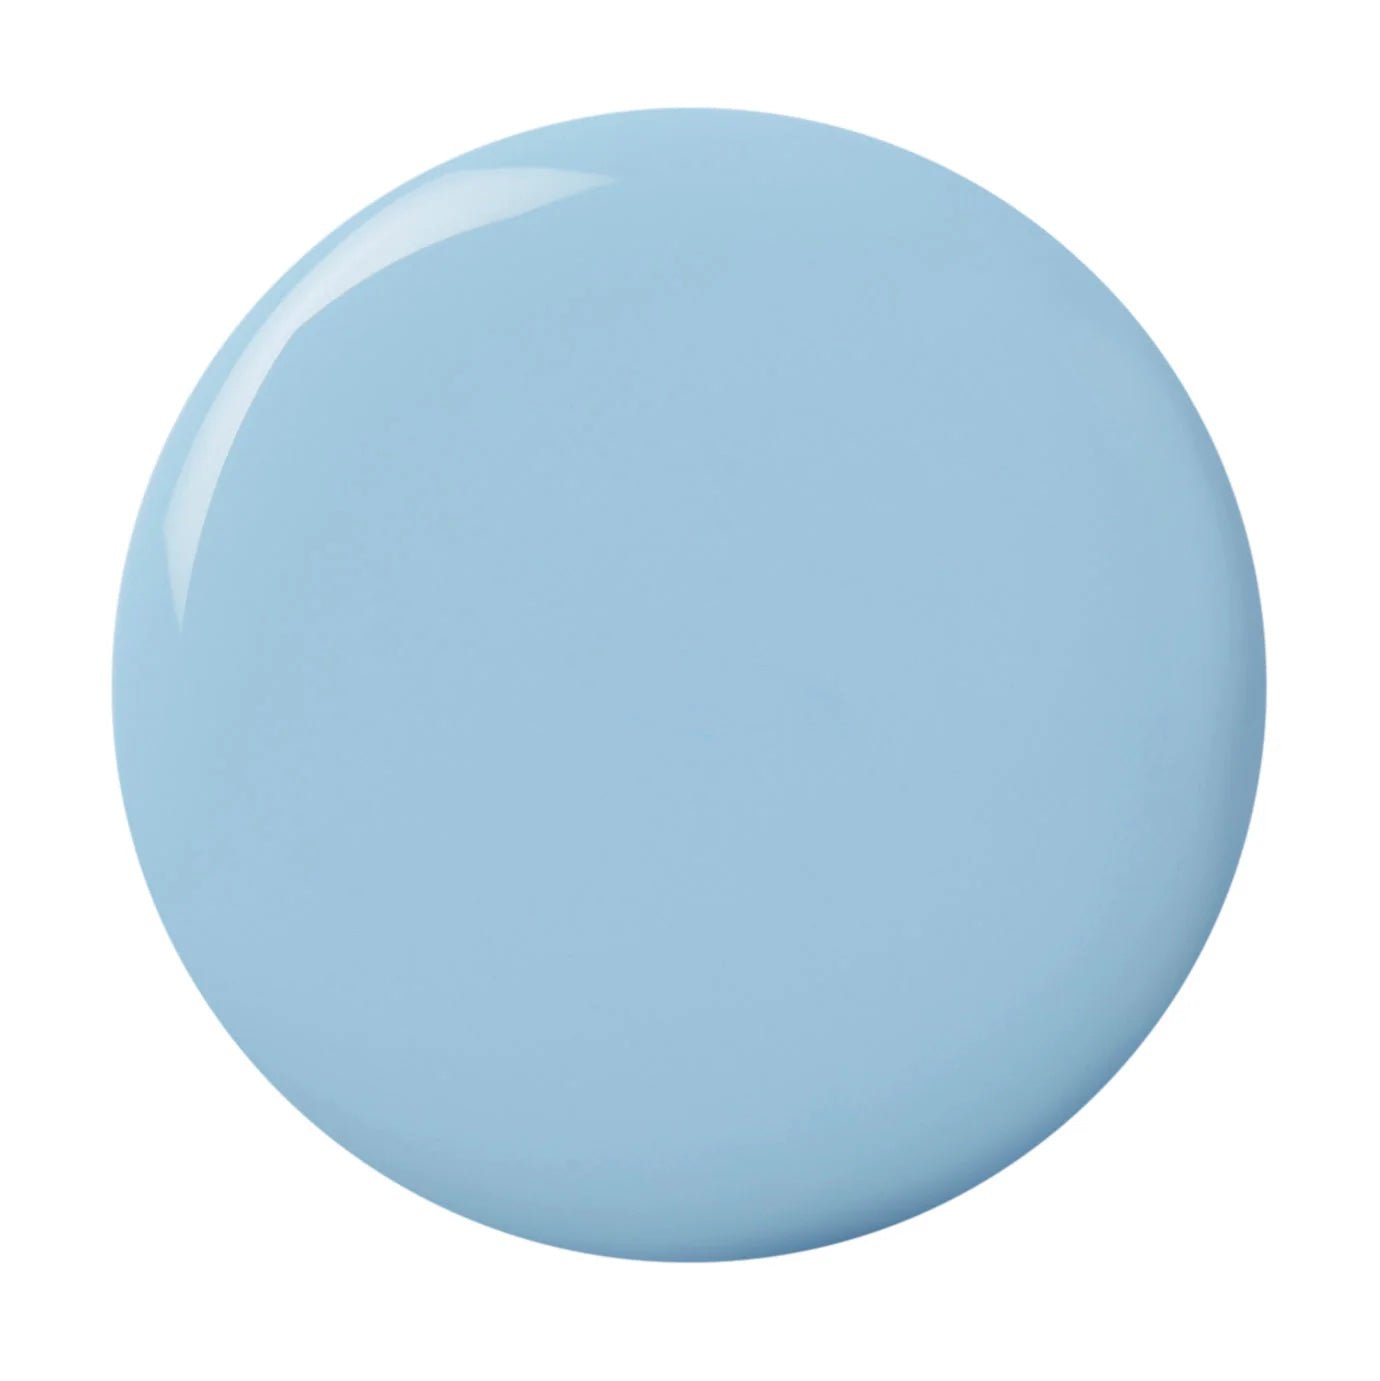 Heliotique | London Grace 'Florence' Light Blue Nail Polish